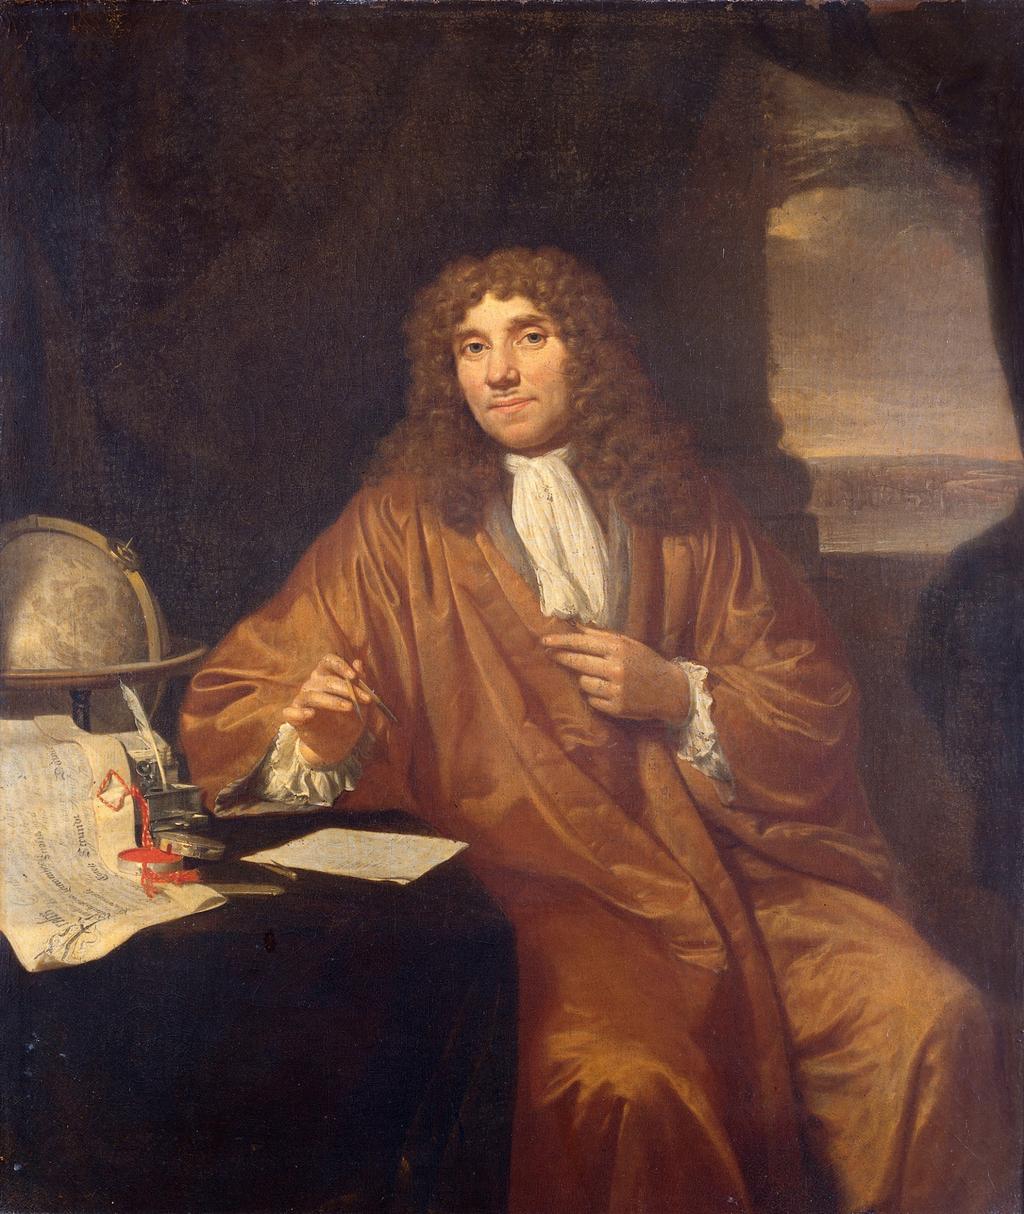 Dutch microscopist and microbiologist Antonie Philips van Leeuwenhoek (1632-1723) made